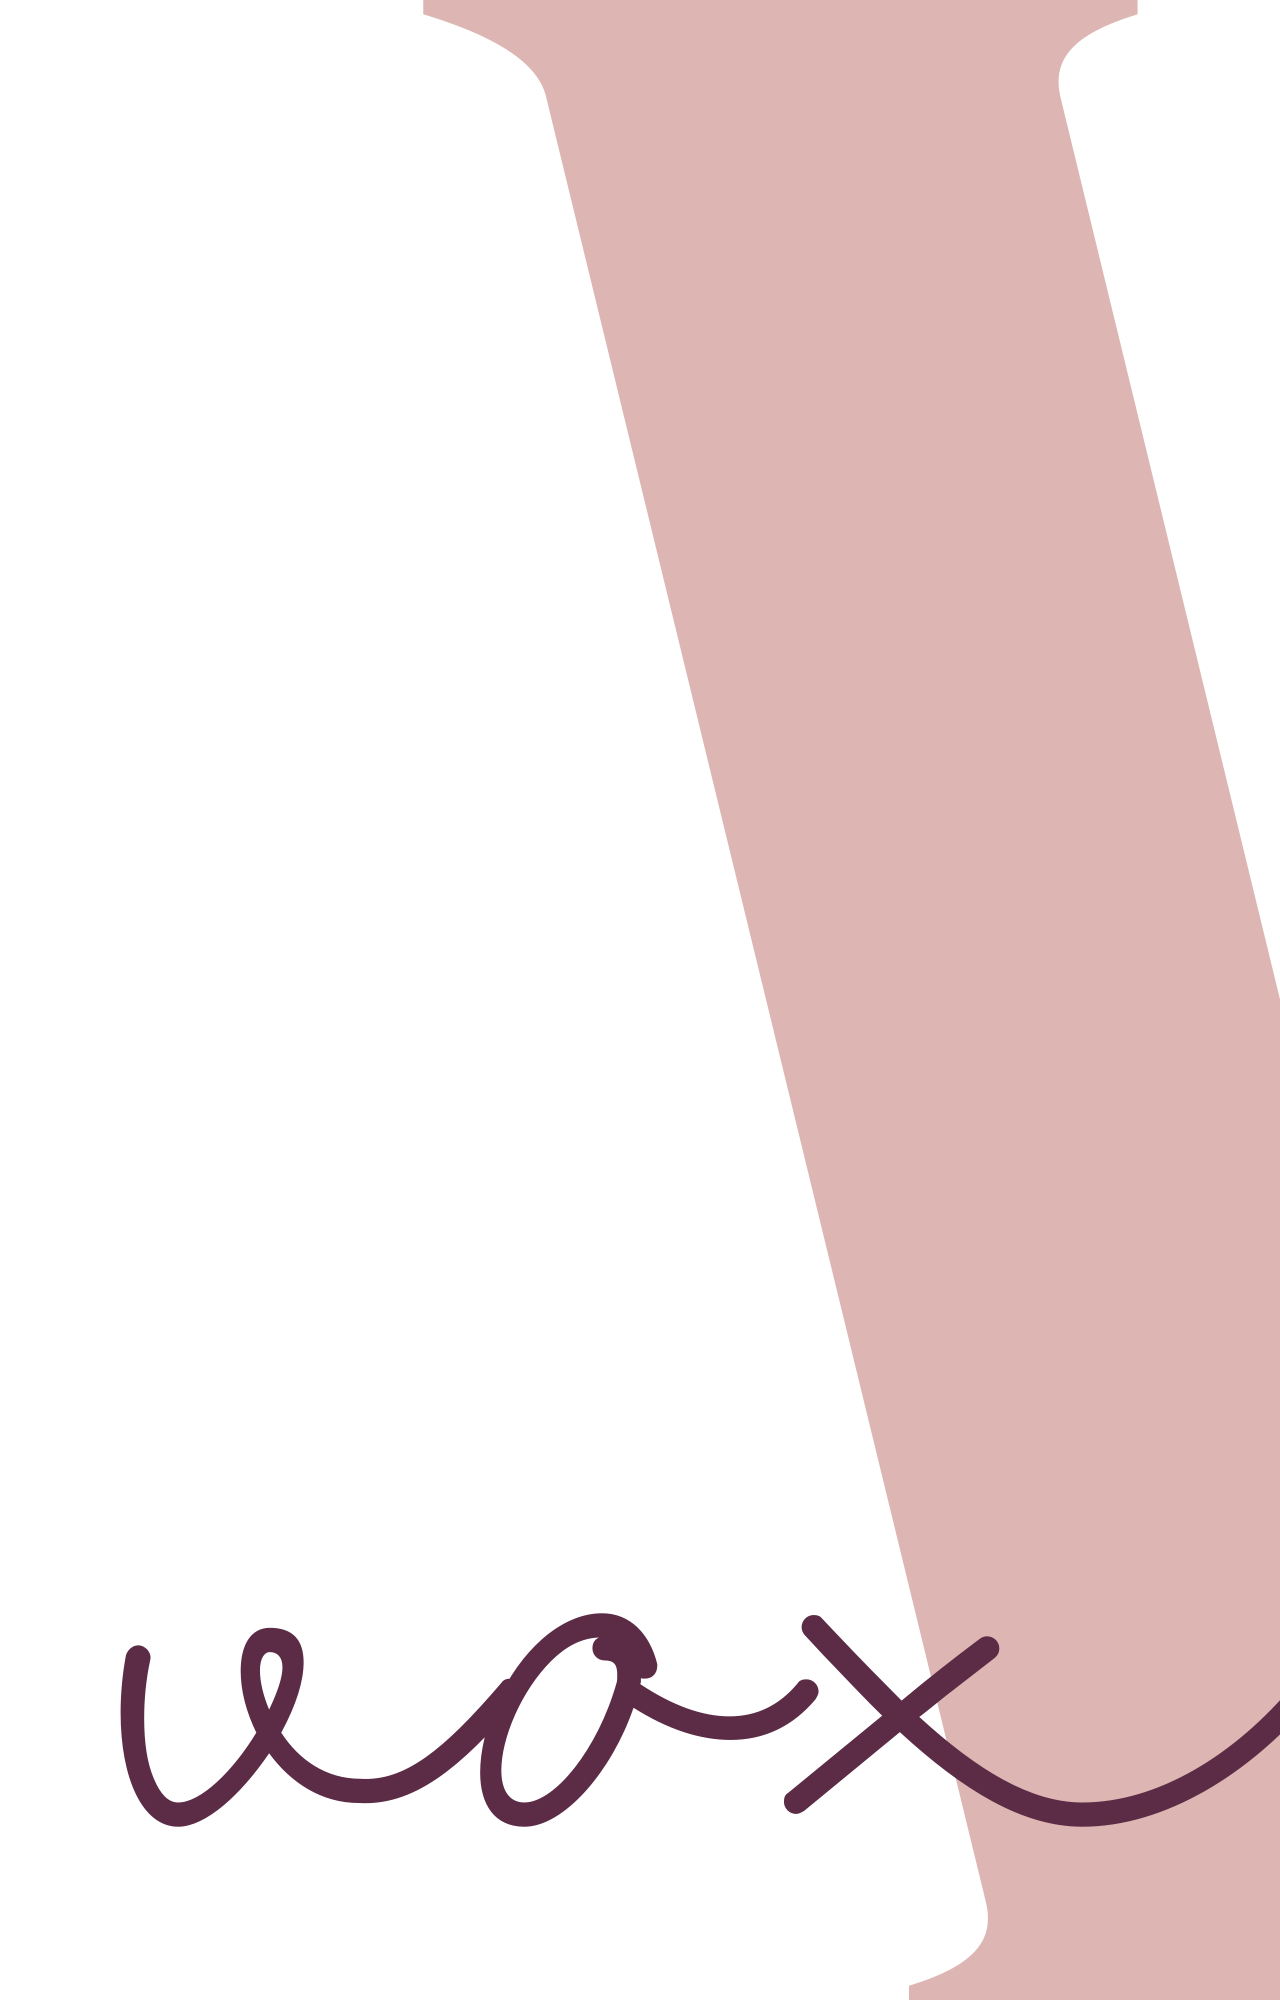 voxxe's logo